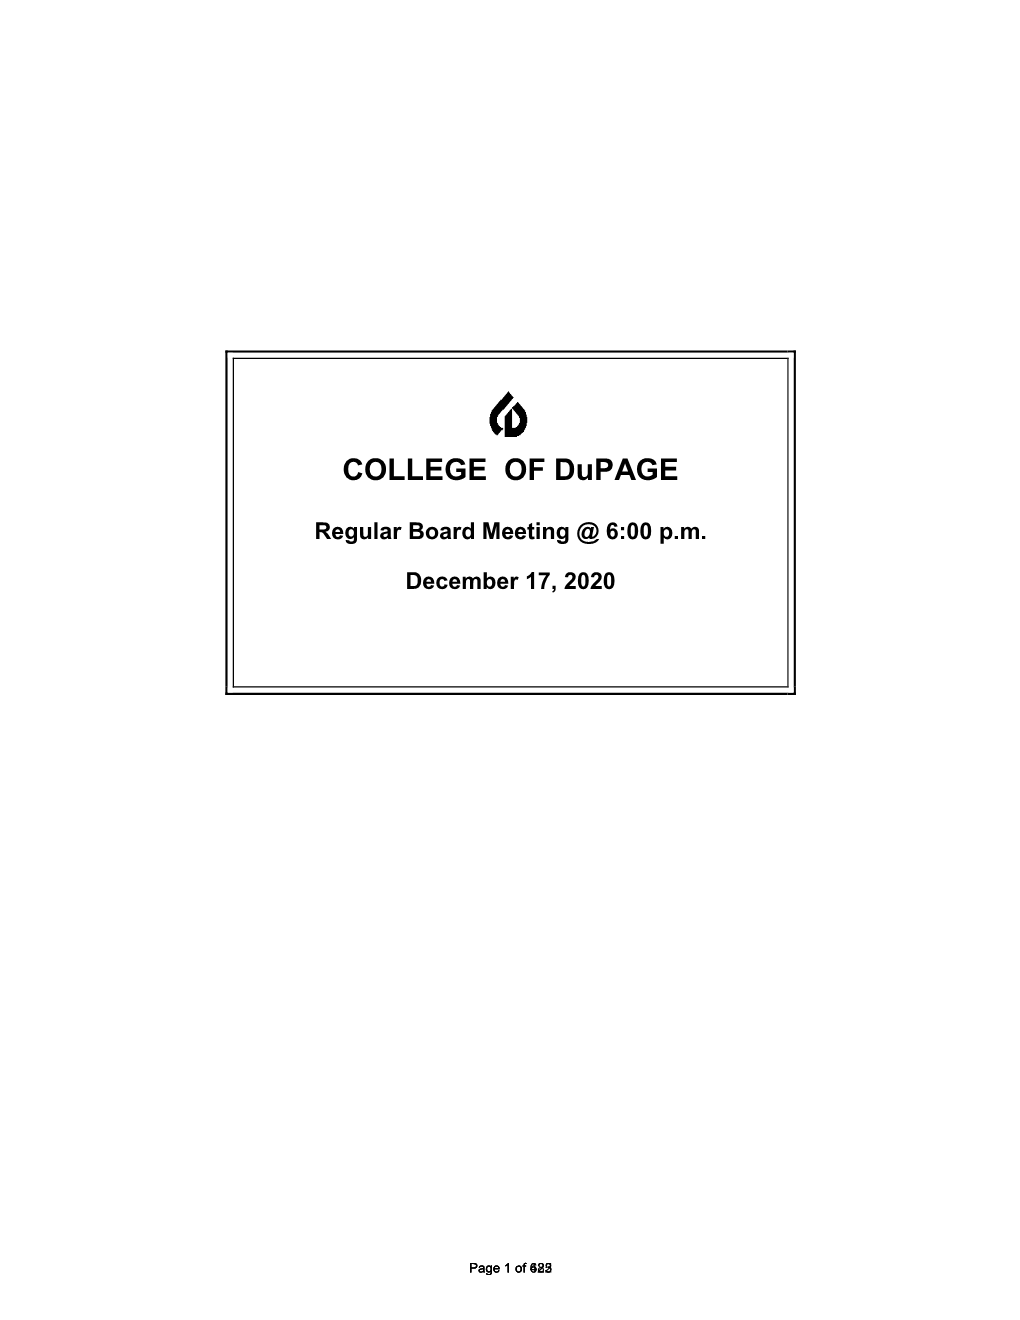 College of Dupage Dec. 17, 2020 Regular Board Meeting Packet